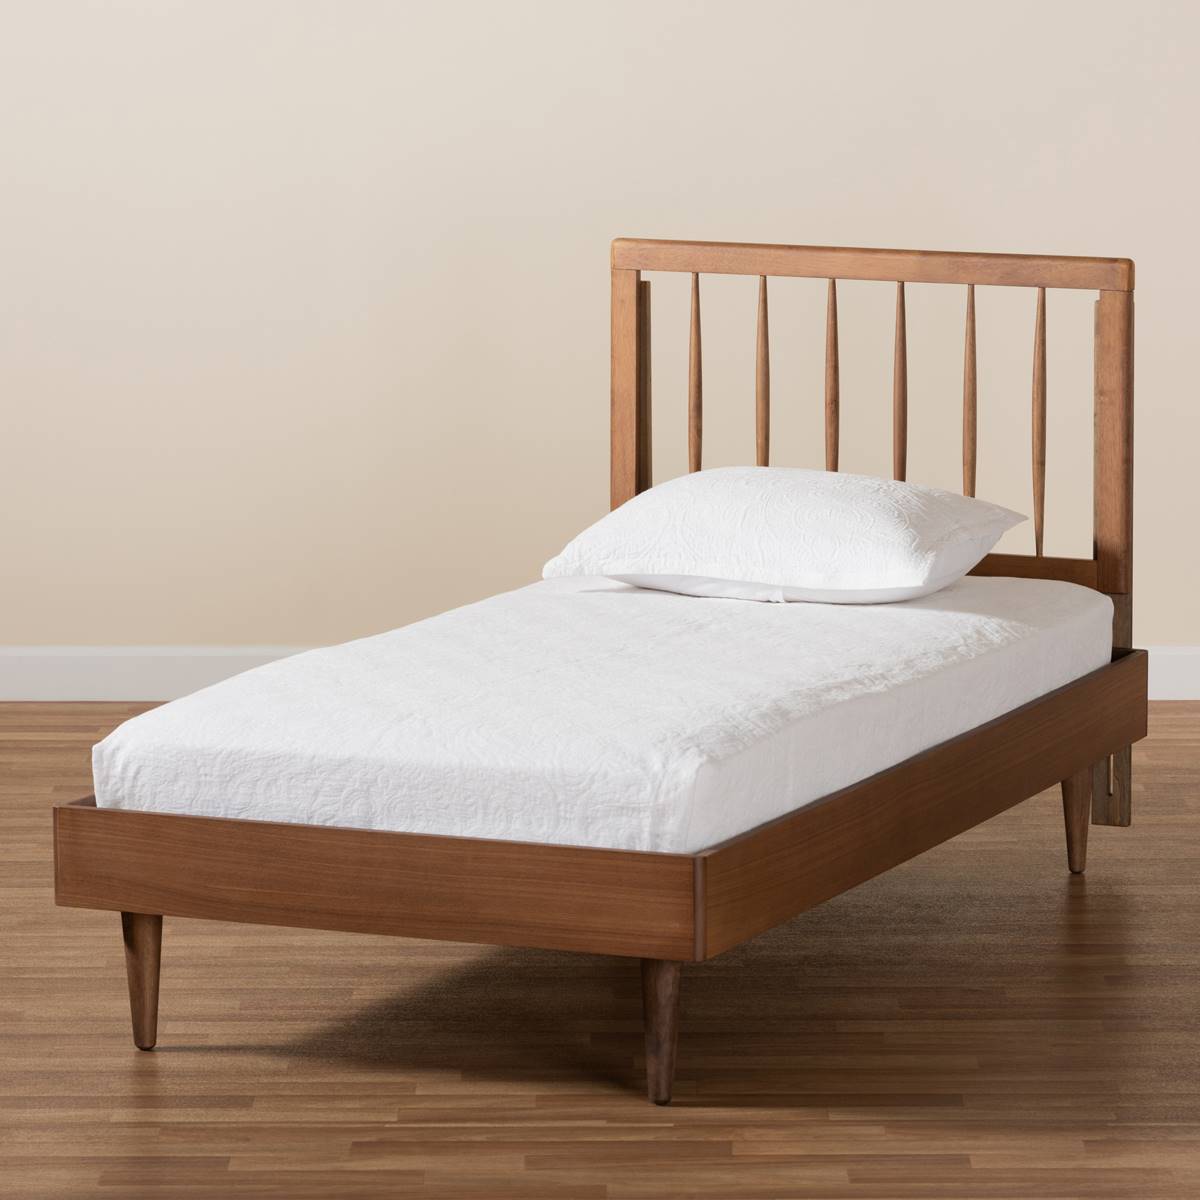 Baxton Studio Sora Ash Walnut Wood Twin Size Platform Bed